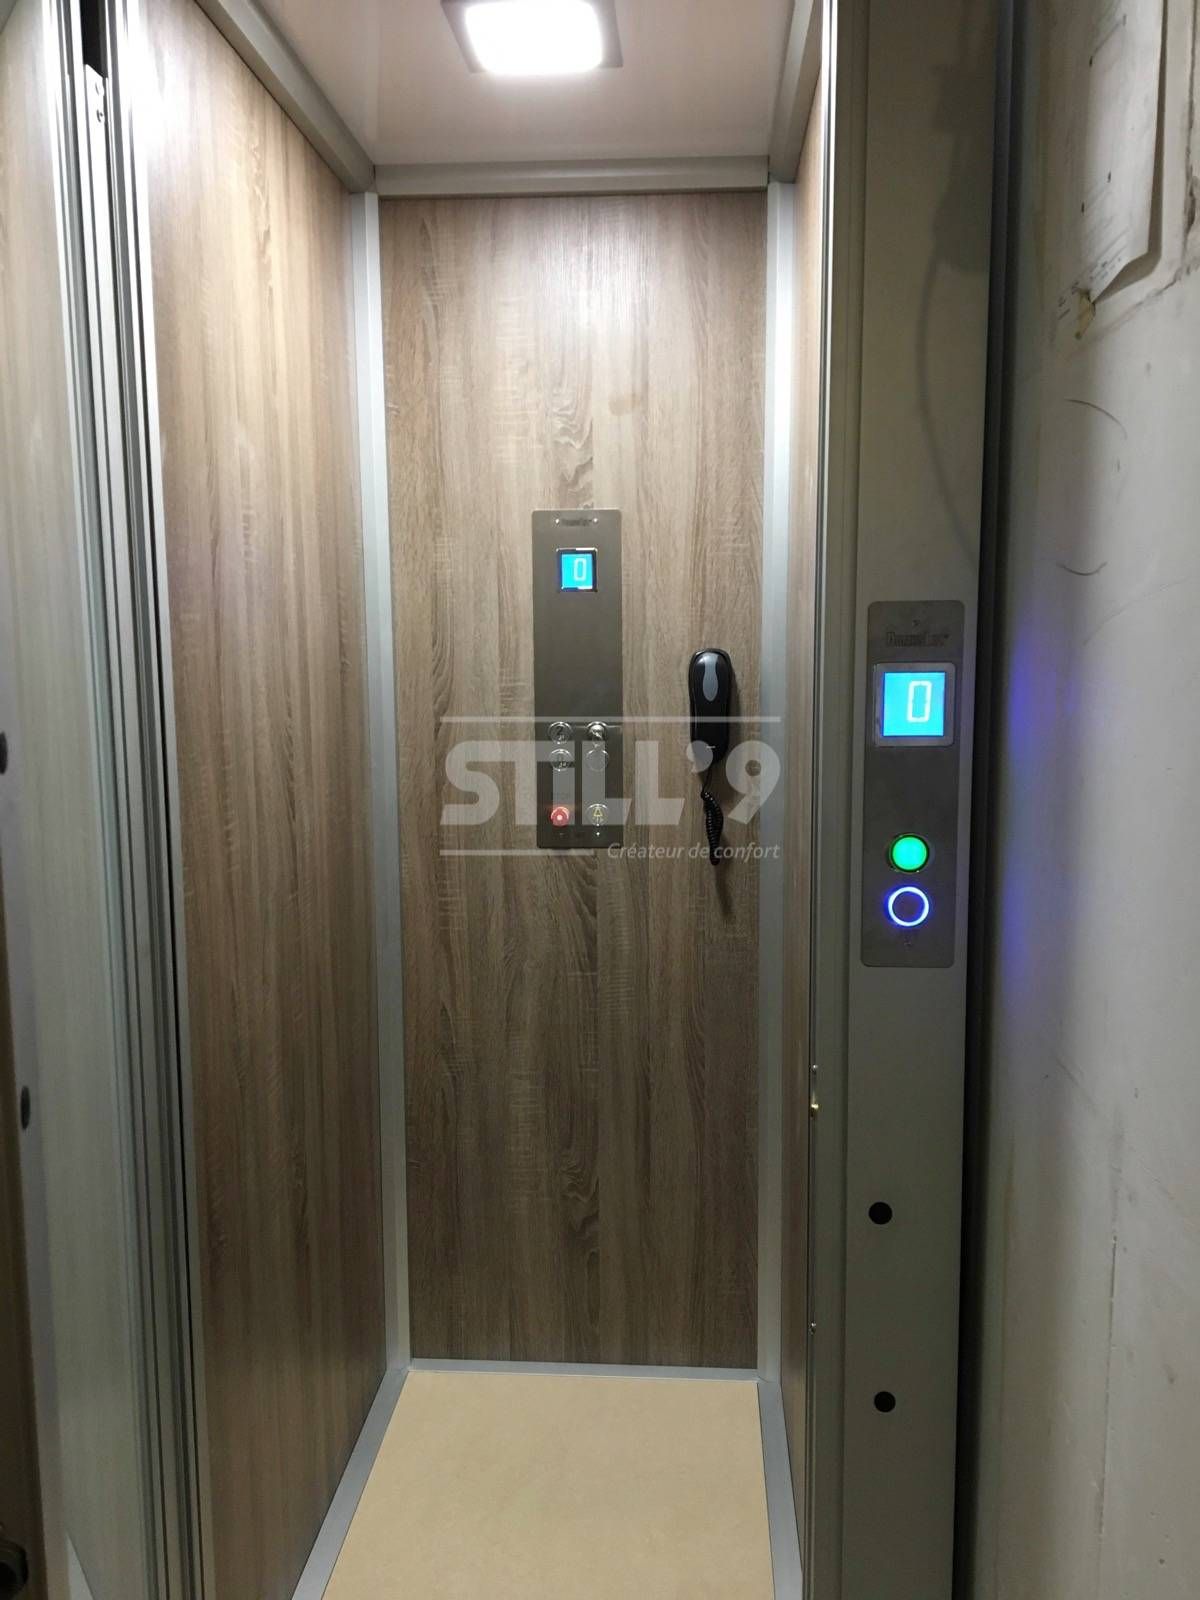 Xs ascenseur de maison - still9 - largeur 670 mm_0